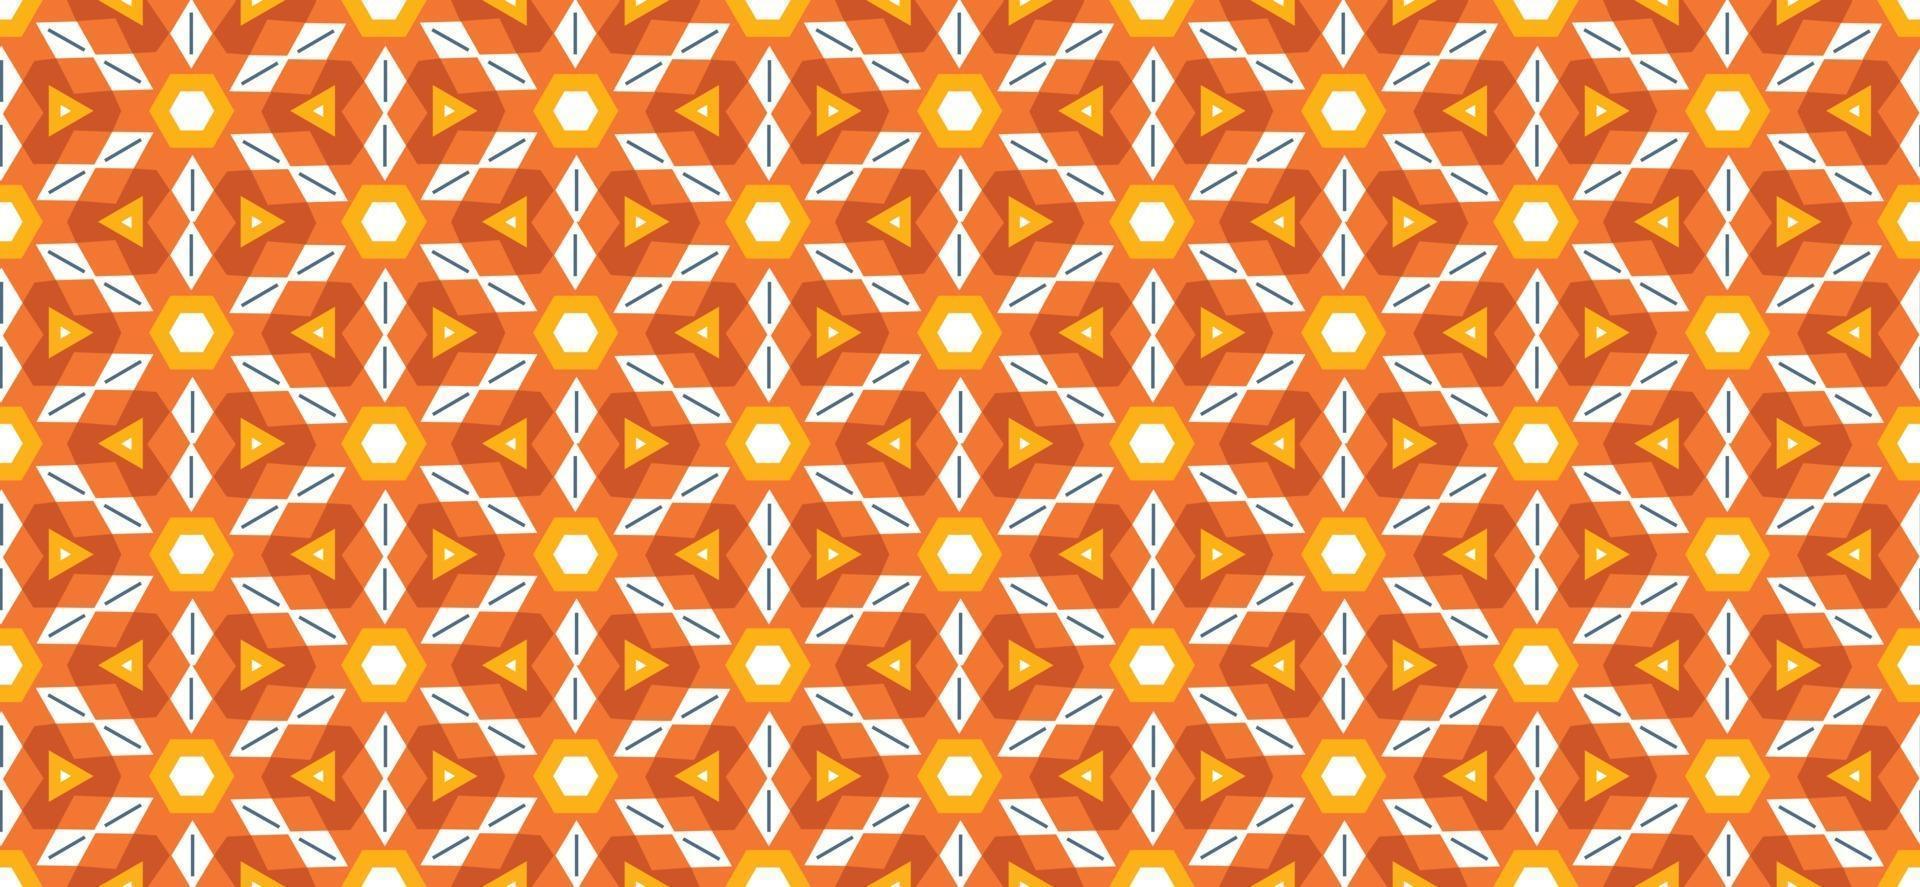 patrón geométrico fondo de vector transparente naranja degradado ilustración vectorial